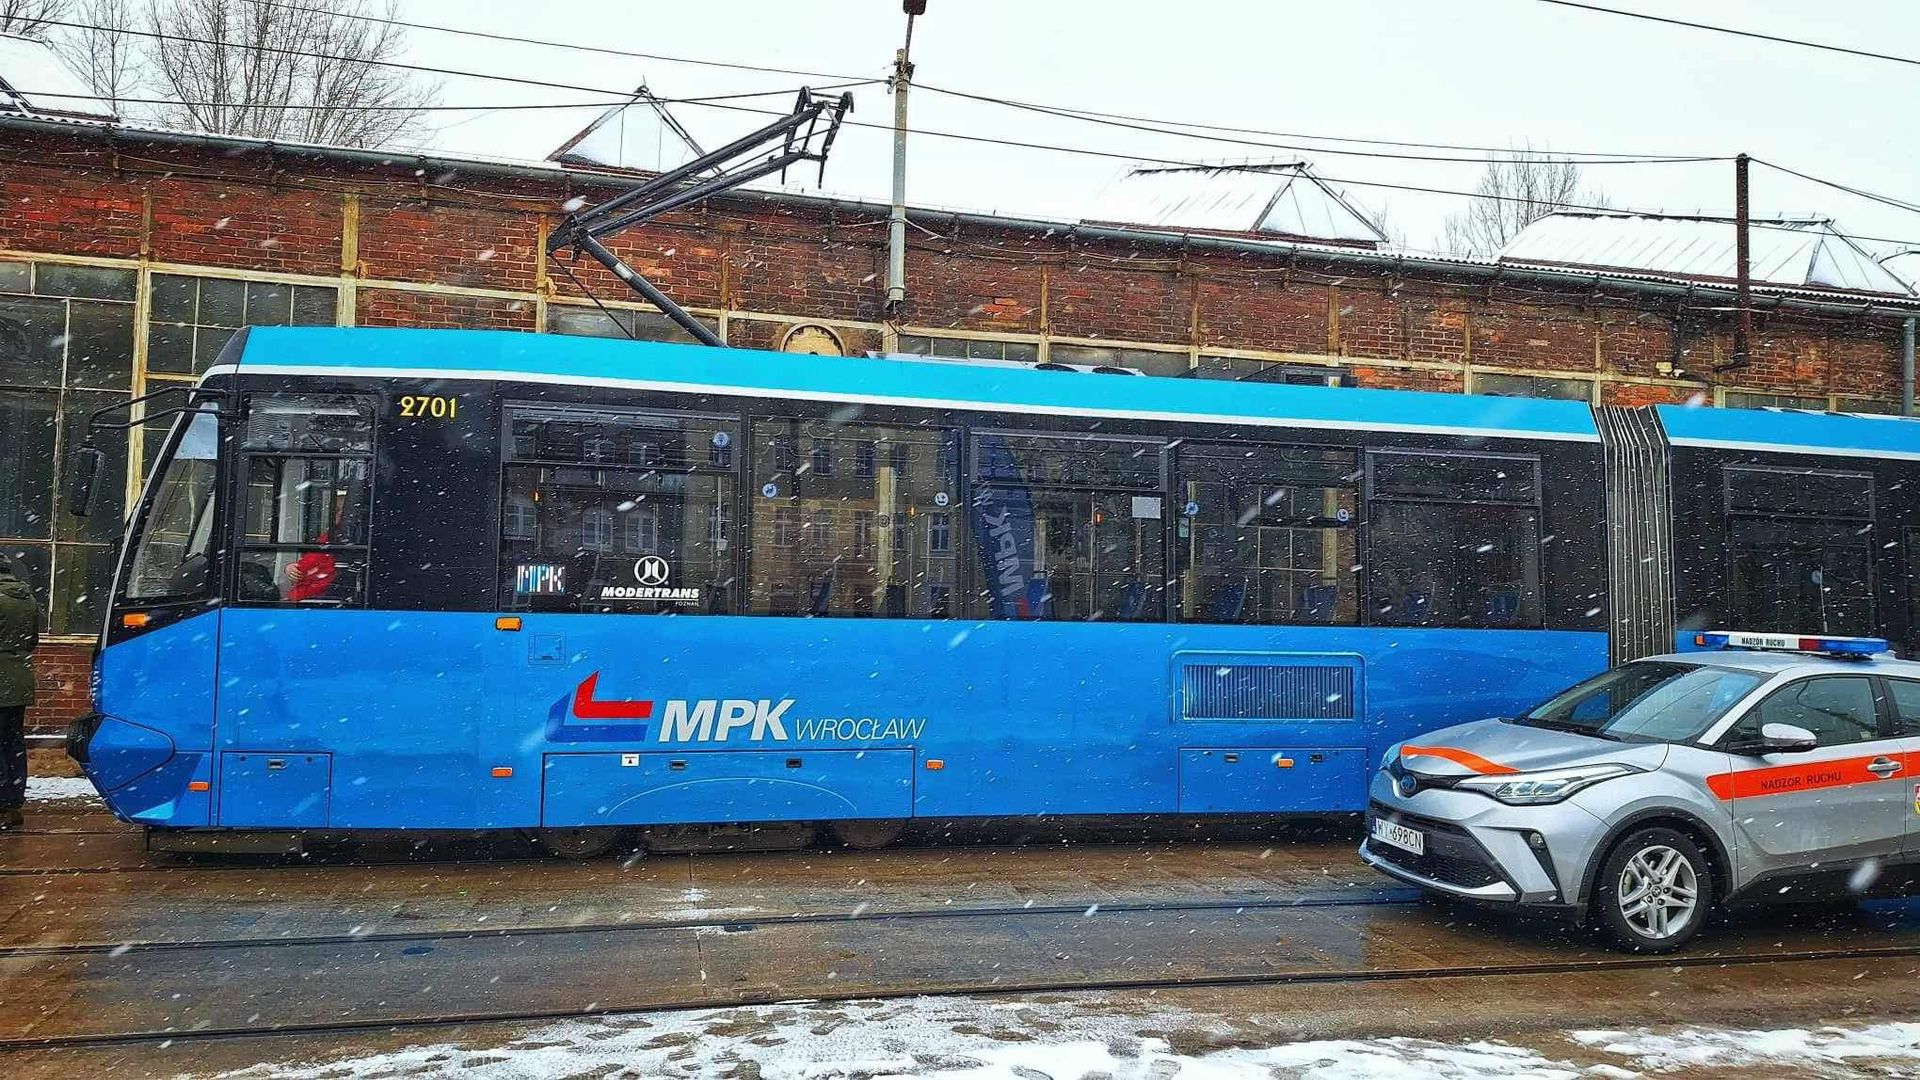 MPK apeluje o ostrożność i przypomina: tramwaj nie wyhamuje tak szybko jak samochód!